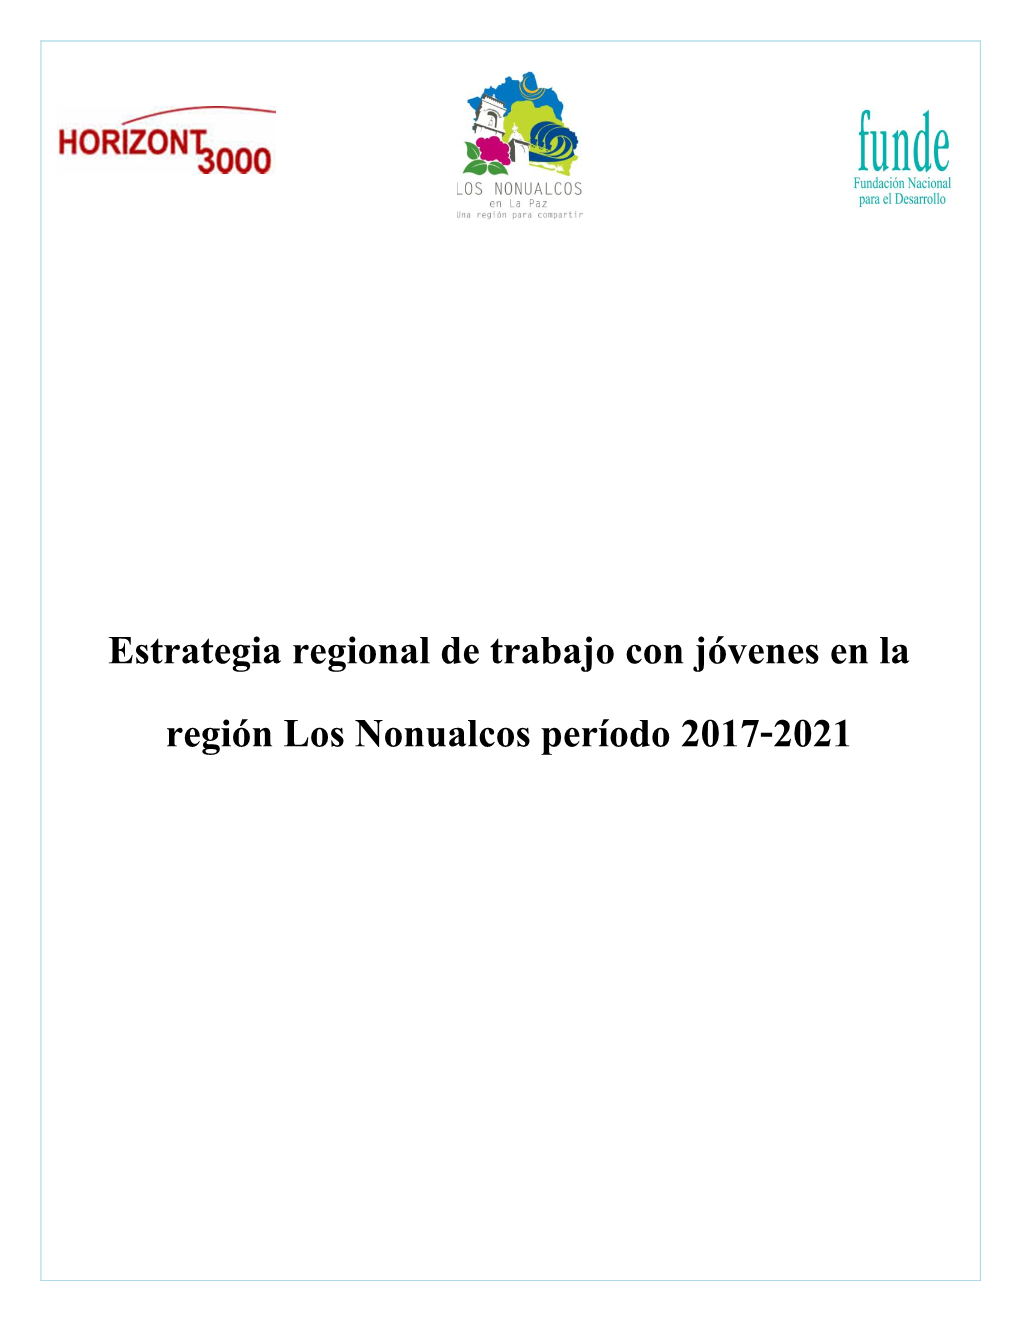 Estrategia Regional De Trabajo Con Jóvenes En La Región Los Nonualcos Período 2017-2021